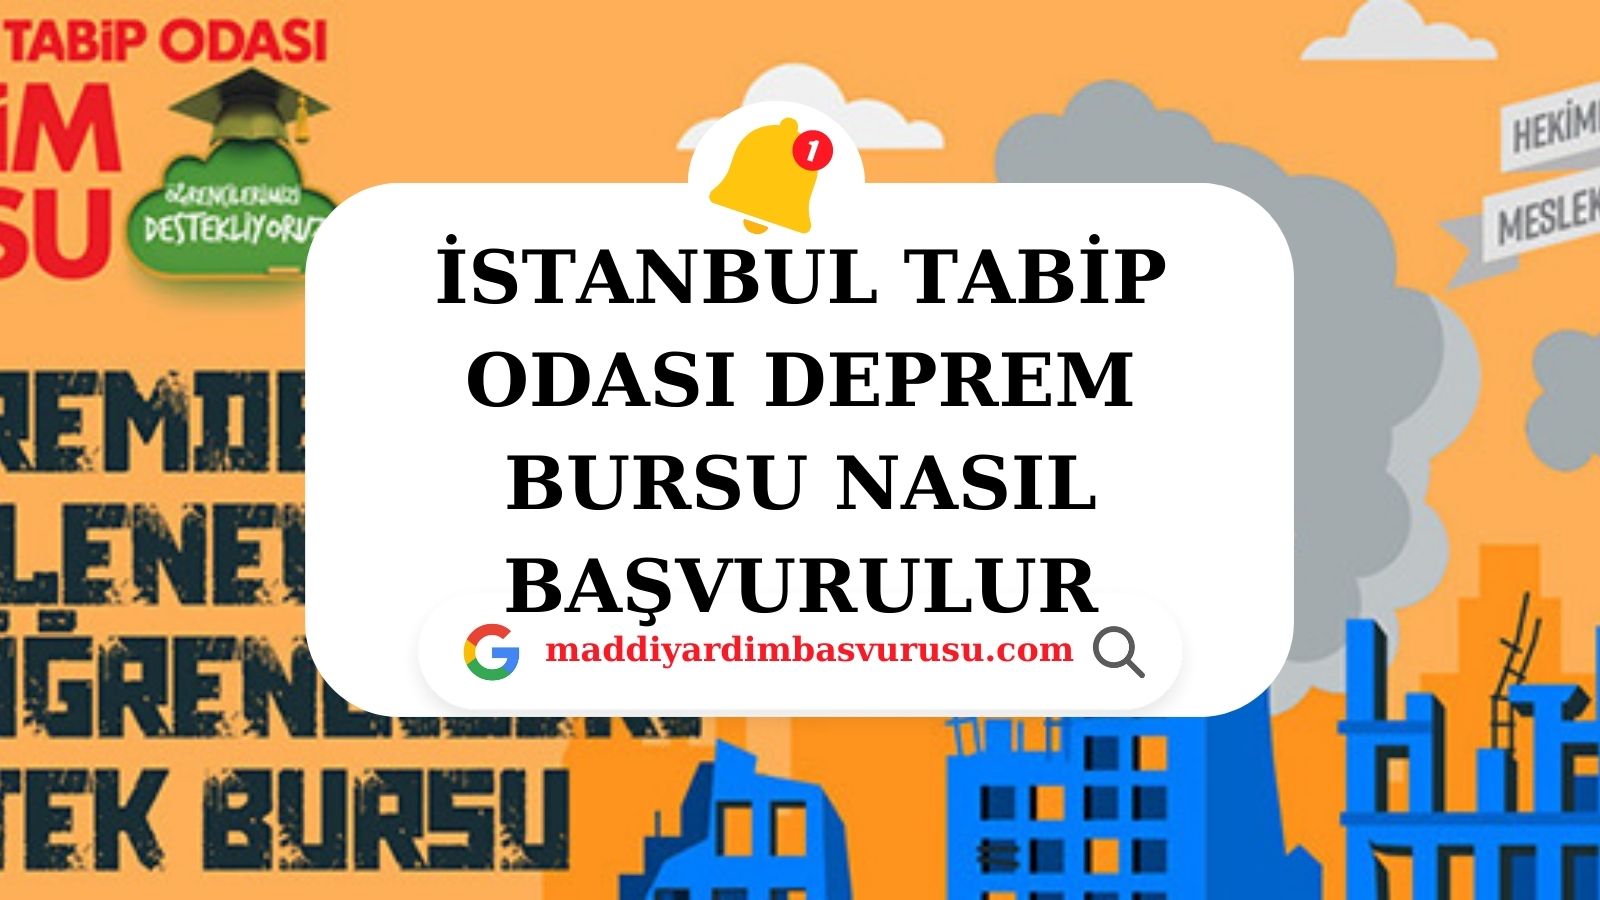 İstanbul Tabip Odası Deprem Bursu Nasıl Başvurulur